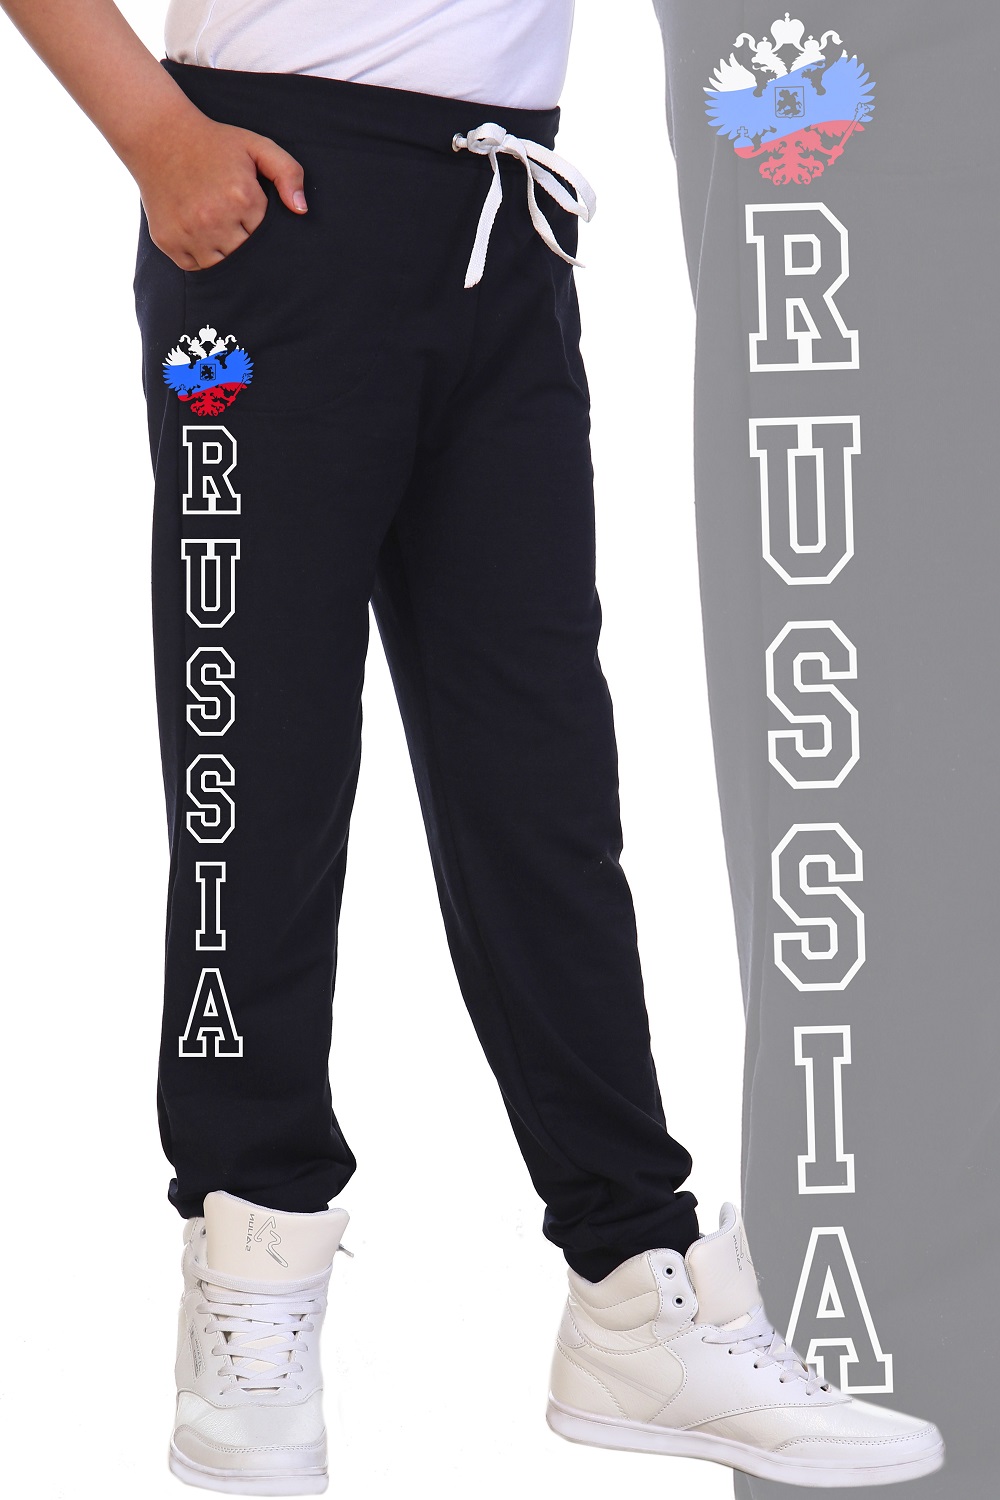 Фото товара 22594, темно-синее трико с российским флагом